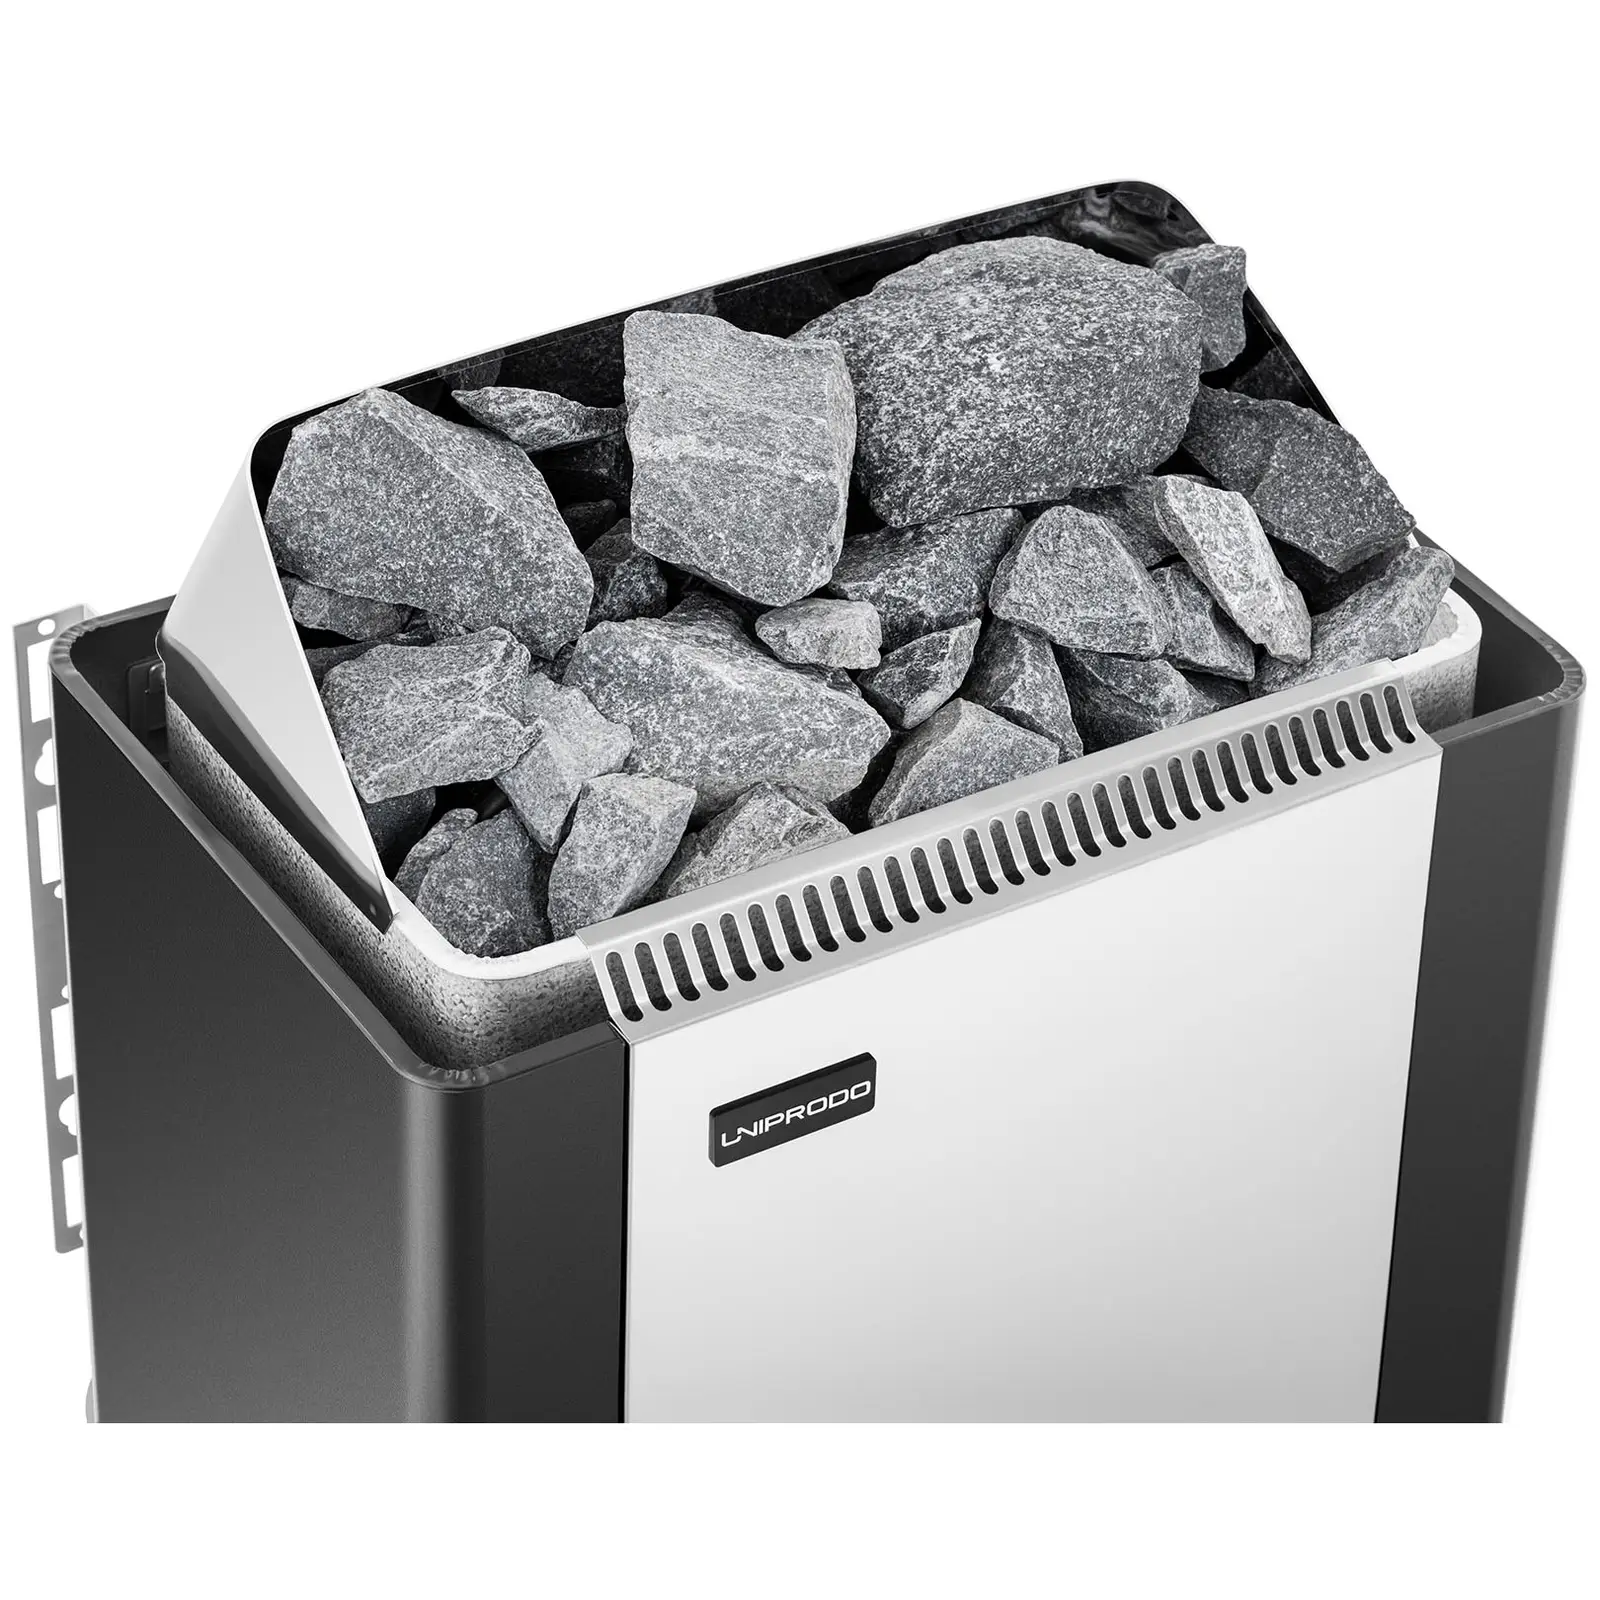 Saunová kamna s externí řídící jednotkou pro sauny - 6 kW - 30 až 110 °C